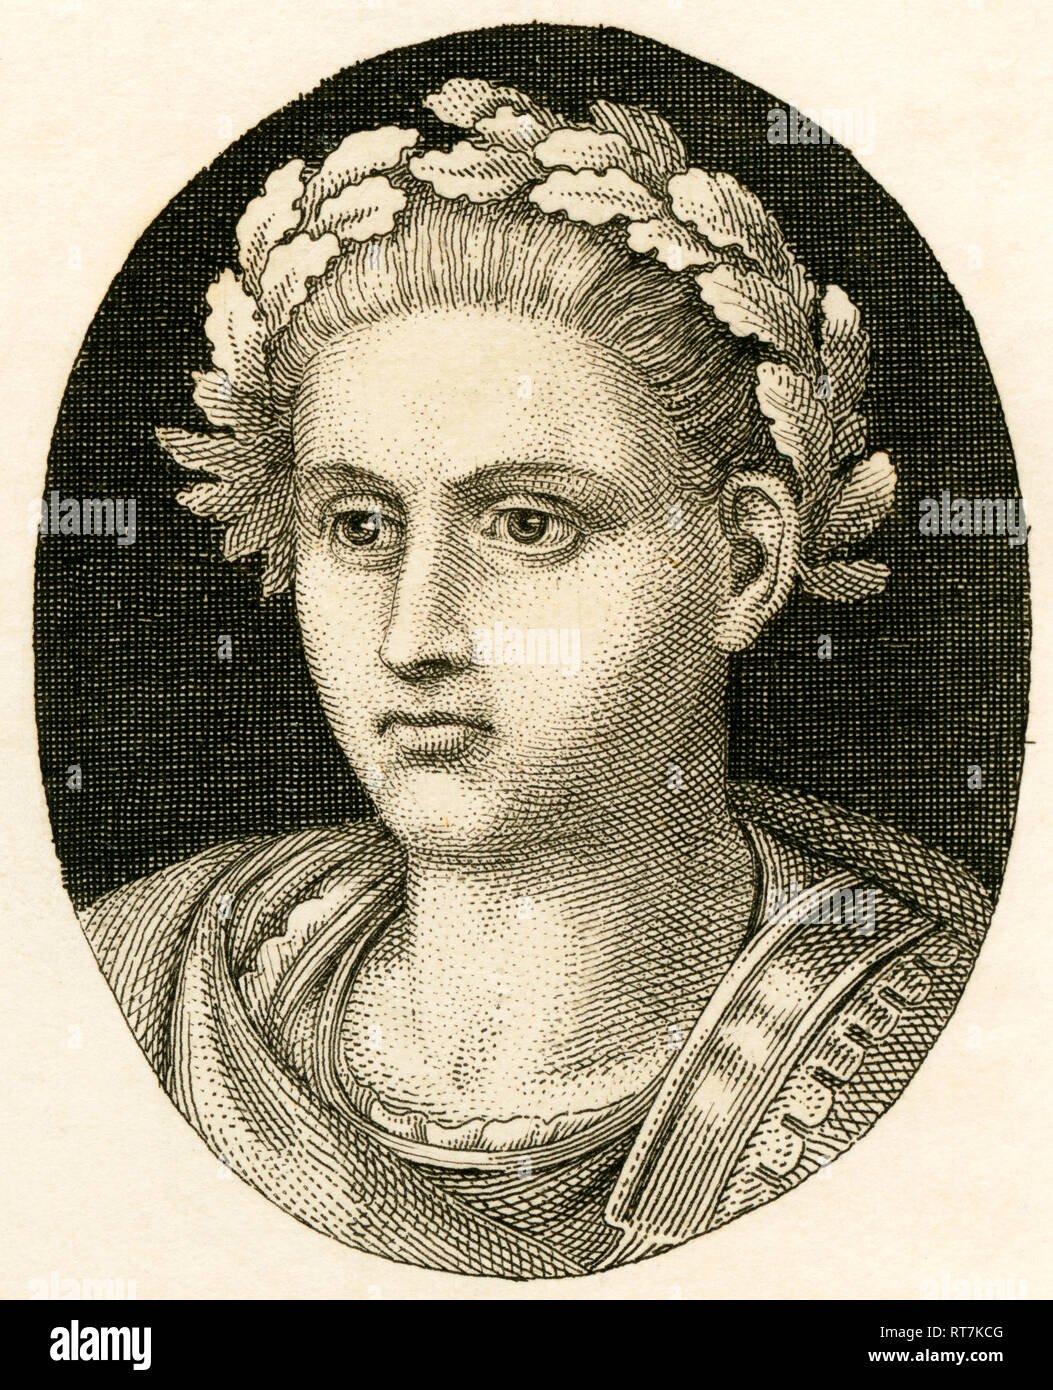 Trajano, emperador romano, grabado de Strahlheim copperplate, aproximadamente 1840ª., Copyright del artista no ha de ser borrado Foto de stock